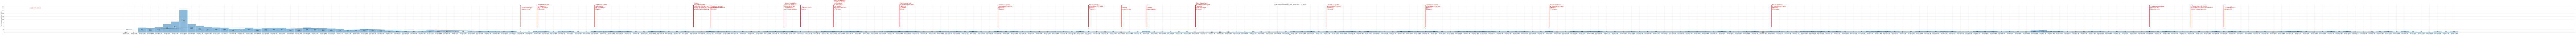 Гистограмма, показывающая количество предложений домов, дач и коттеджей в Крыму по дням c 2022-01-01 по 2023-06-01